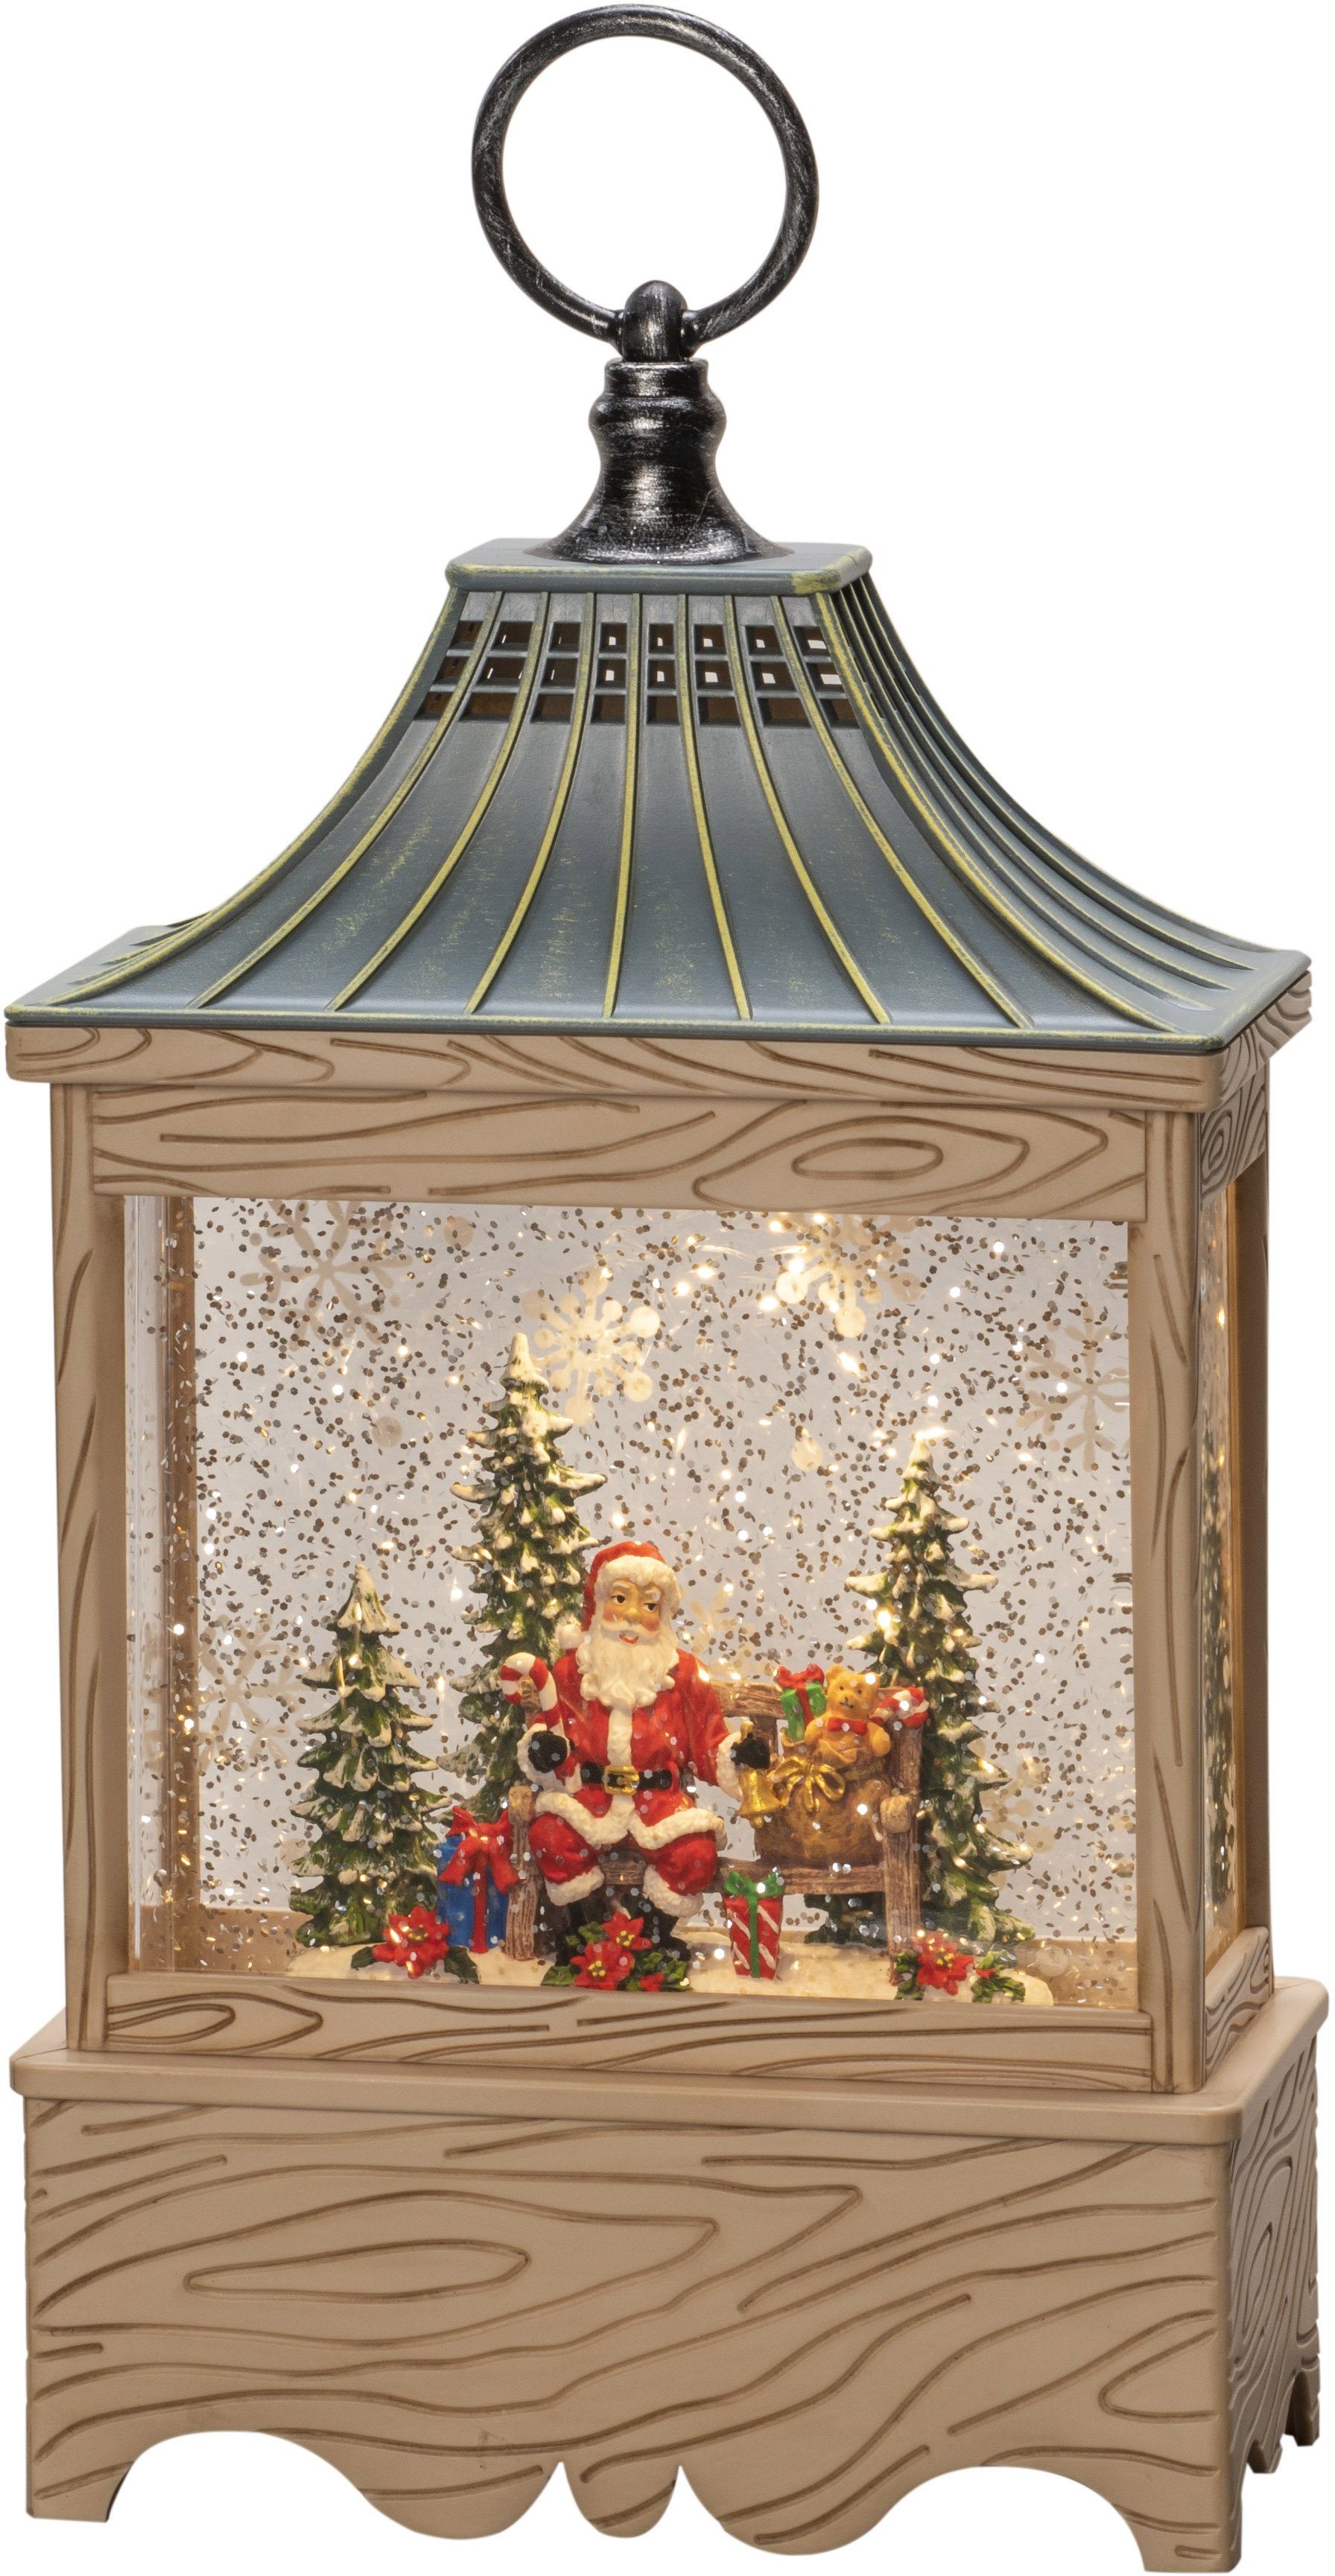 KONSTSMIDE LED Laterne Wasserlaterne Santa und Baum, Weihnachtsdeko, LED fest integriert, Warmweiß, naturfarben, wassergefüllt, 5h Timer, 1 warm weiße Diode | Laternen